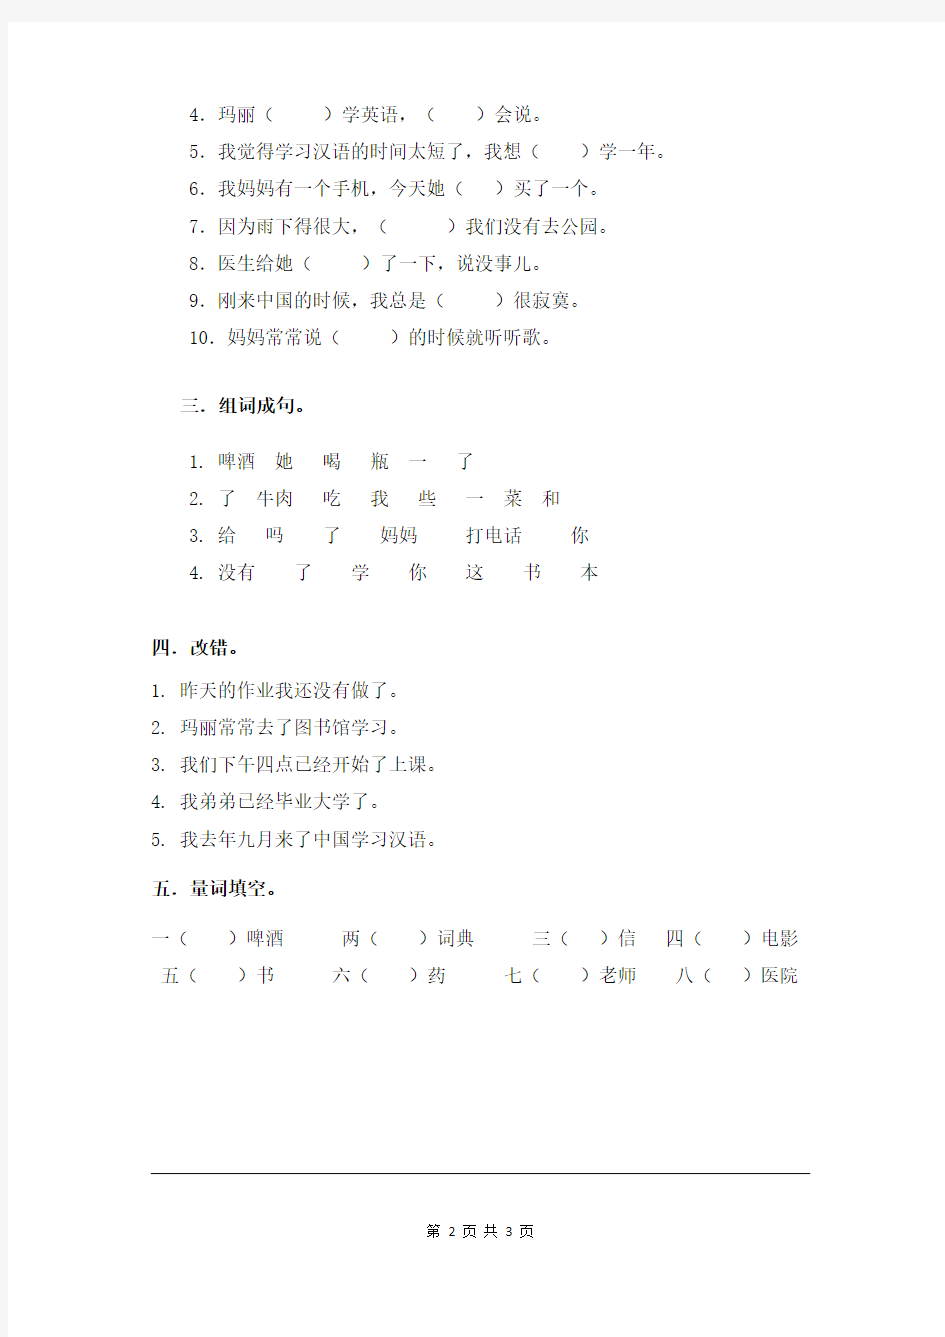 《汉语教程》第一册(下)第 1-2课 练习题